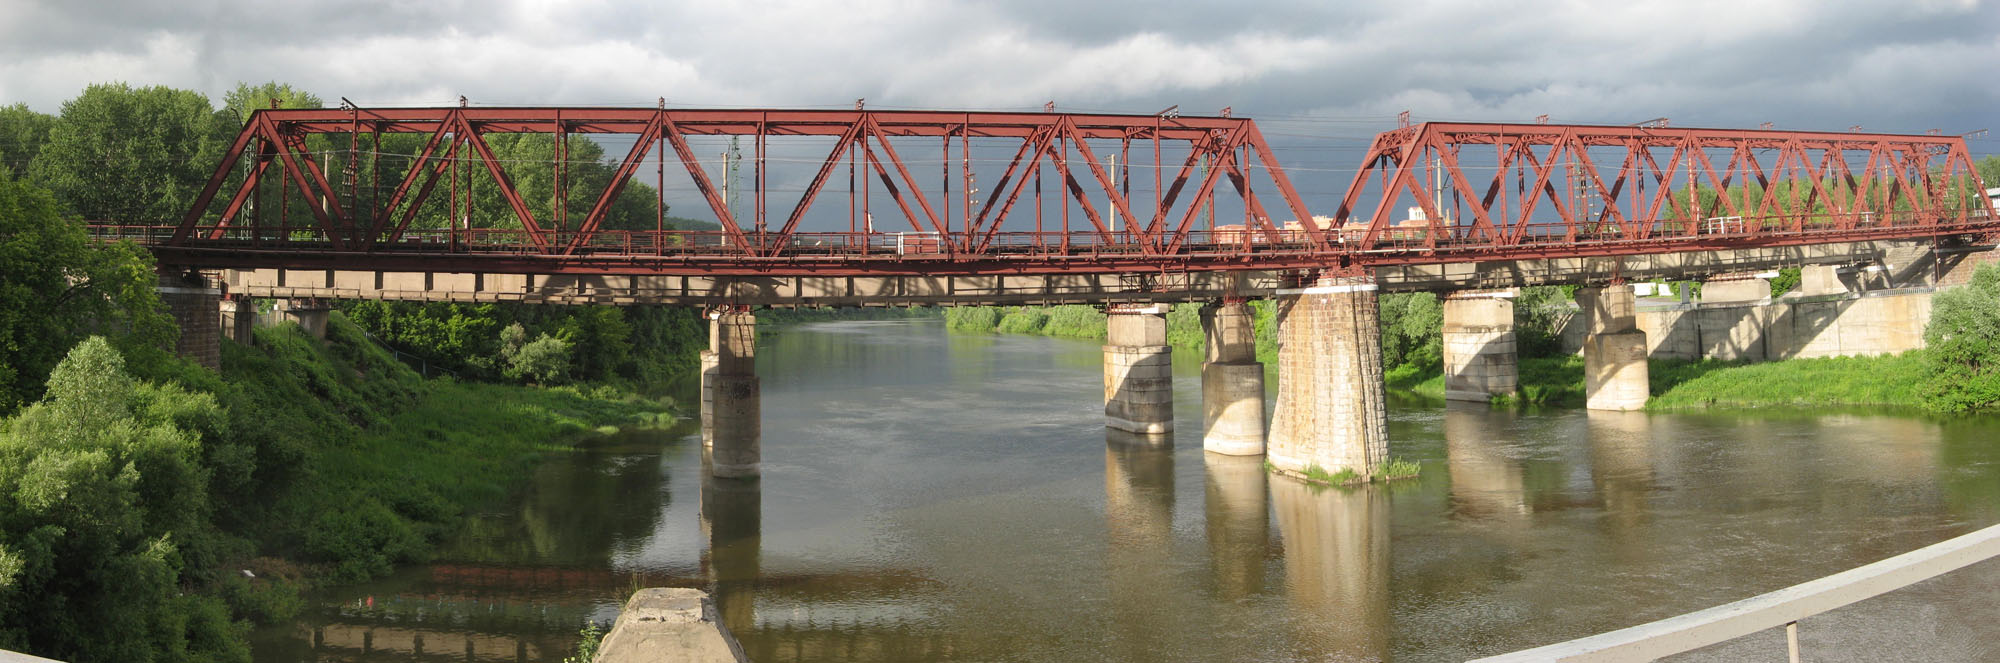 Жд мост через р Иню